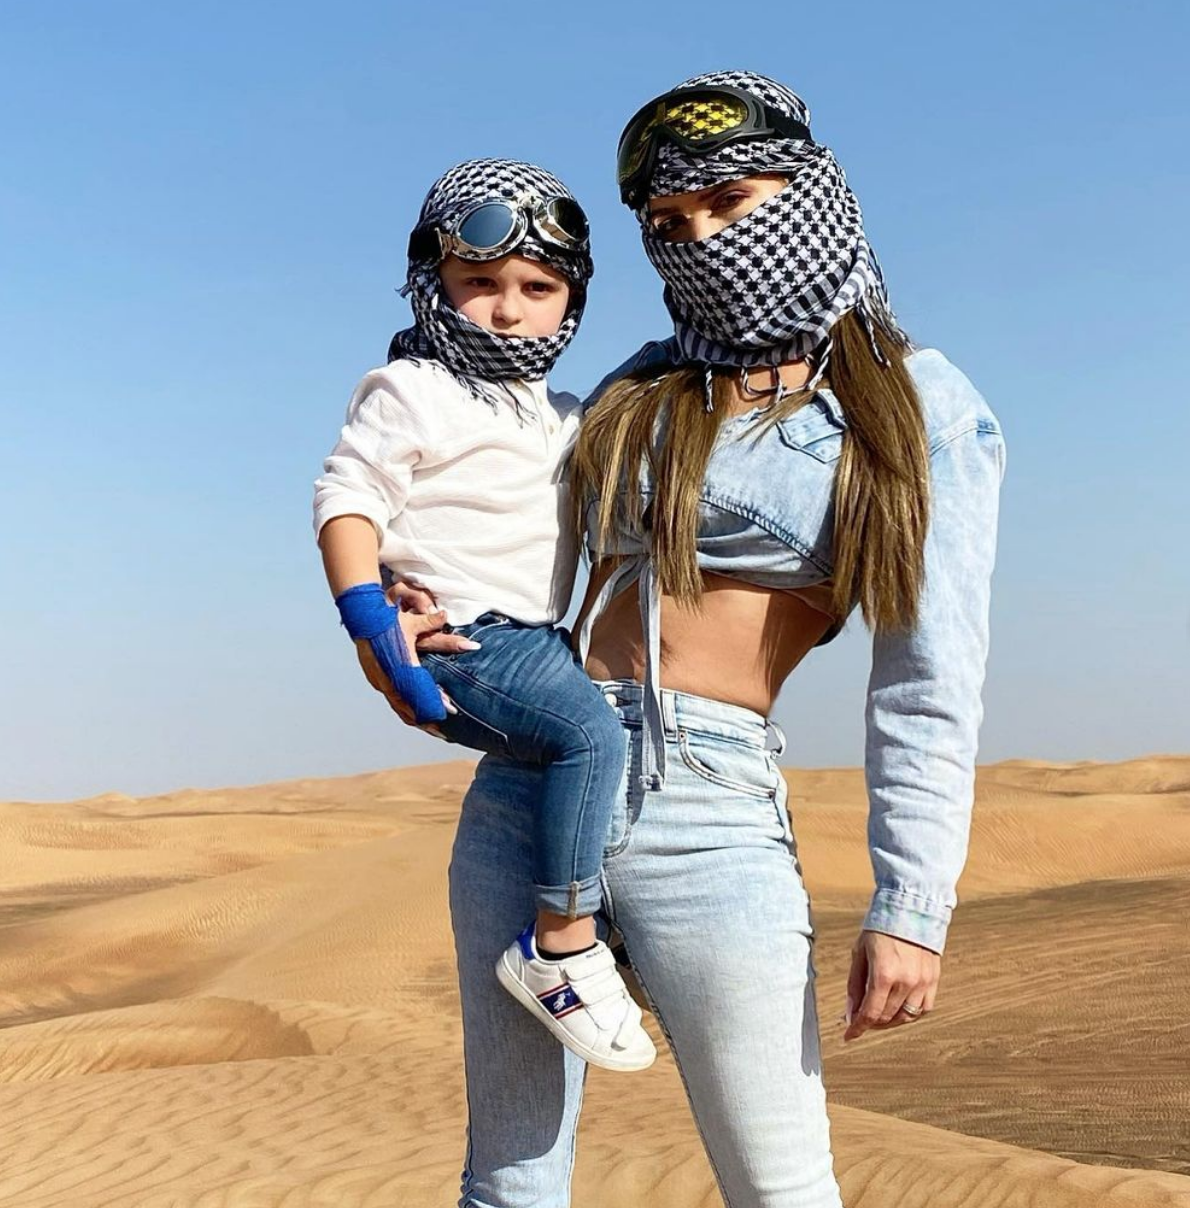  Manon et Tiago Tanti lors d'une sortie dans le désert @ Instagram